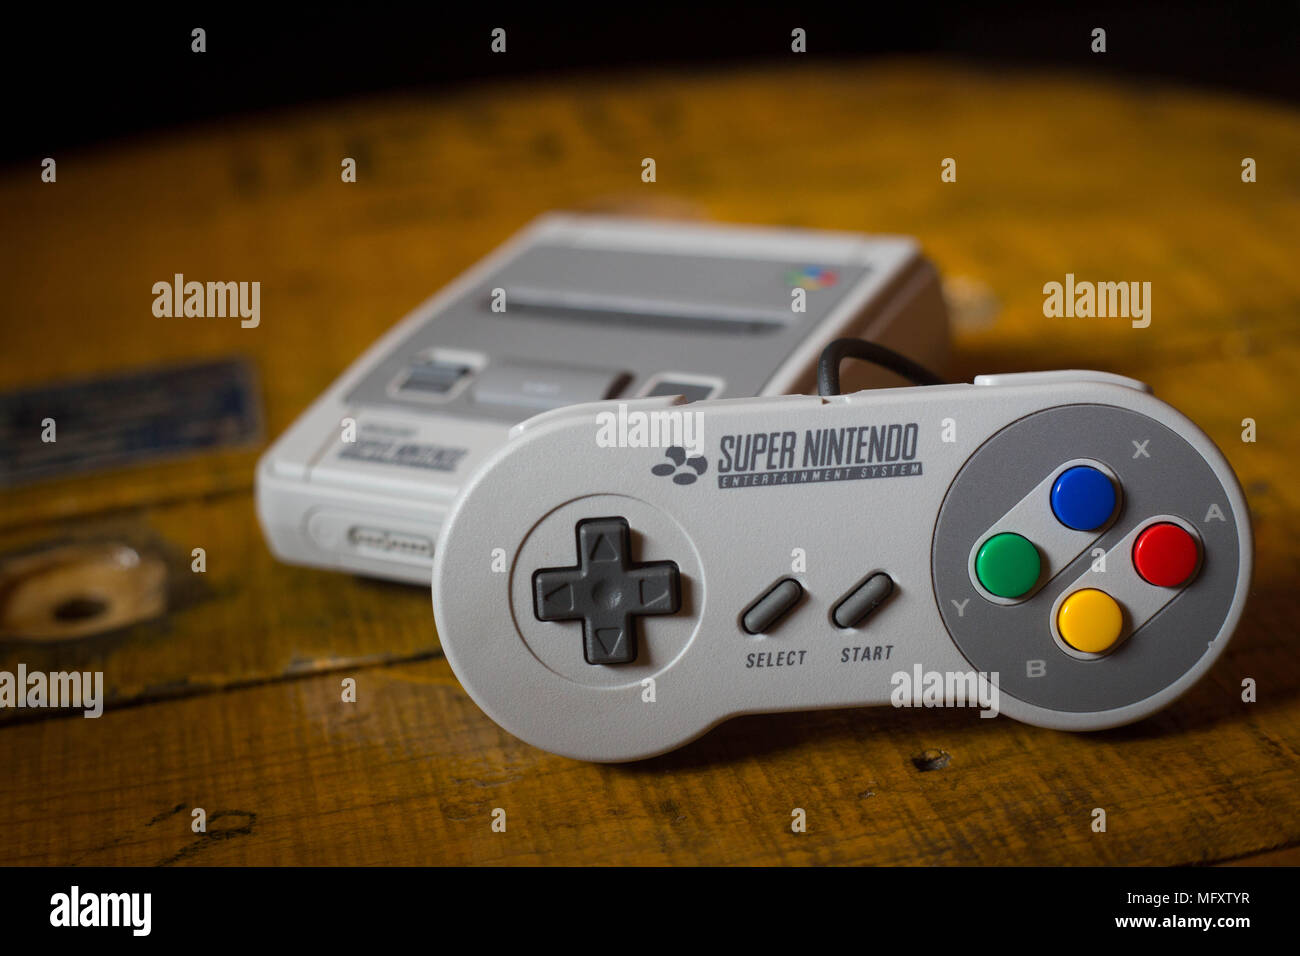 Ein Nintendo's Classic Mini Super Nintendo "Video Game Konsole mit einem  Controller. Das Kyoto-basierte Video Game Company Nintendo endete es  Comeback Jahr Umsatz mit im Wert von $ 9 Mrd. nach ein